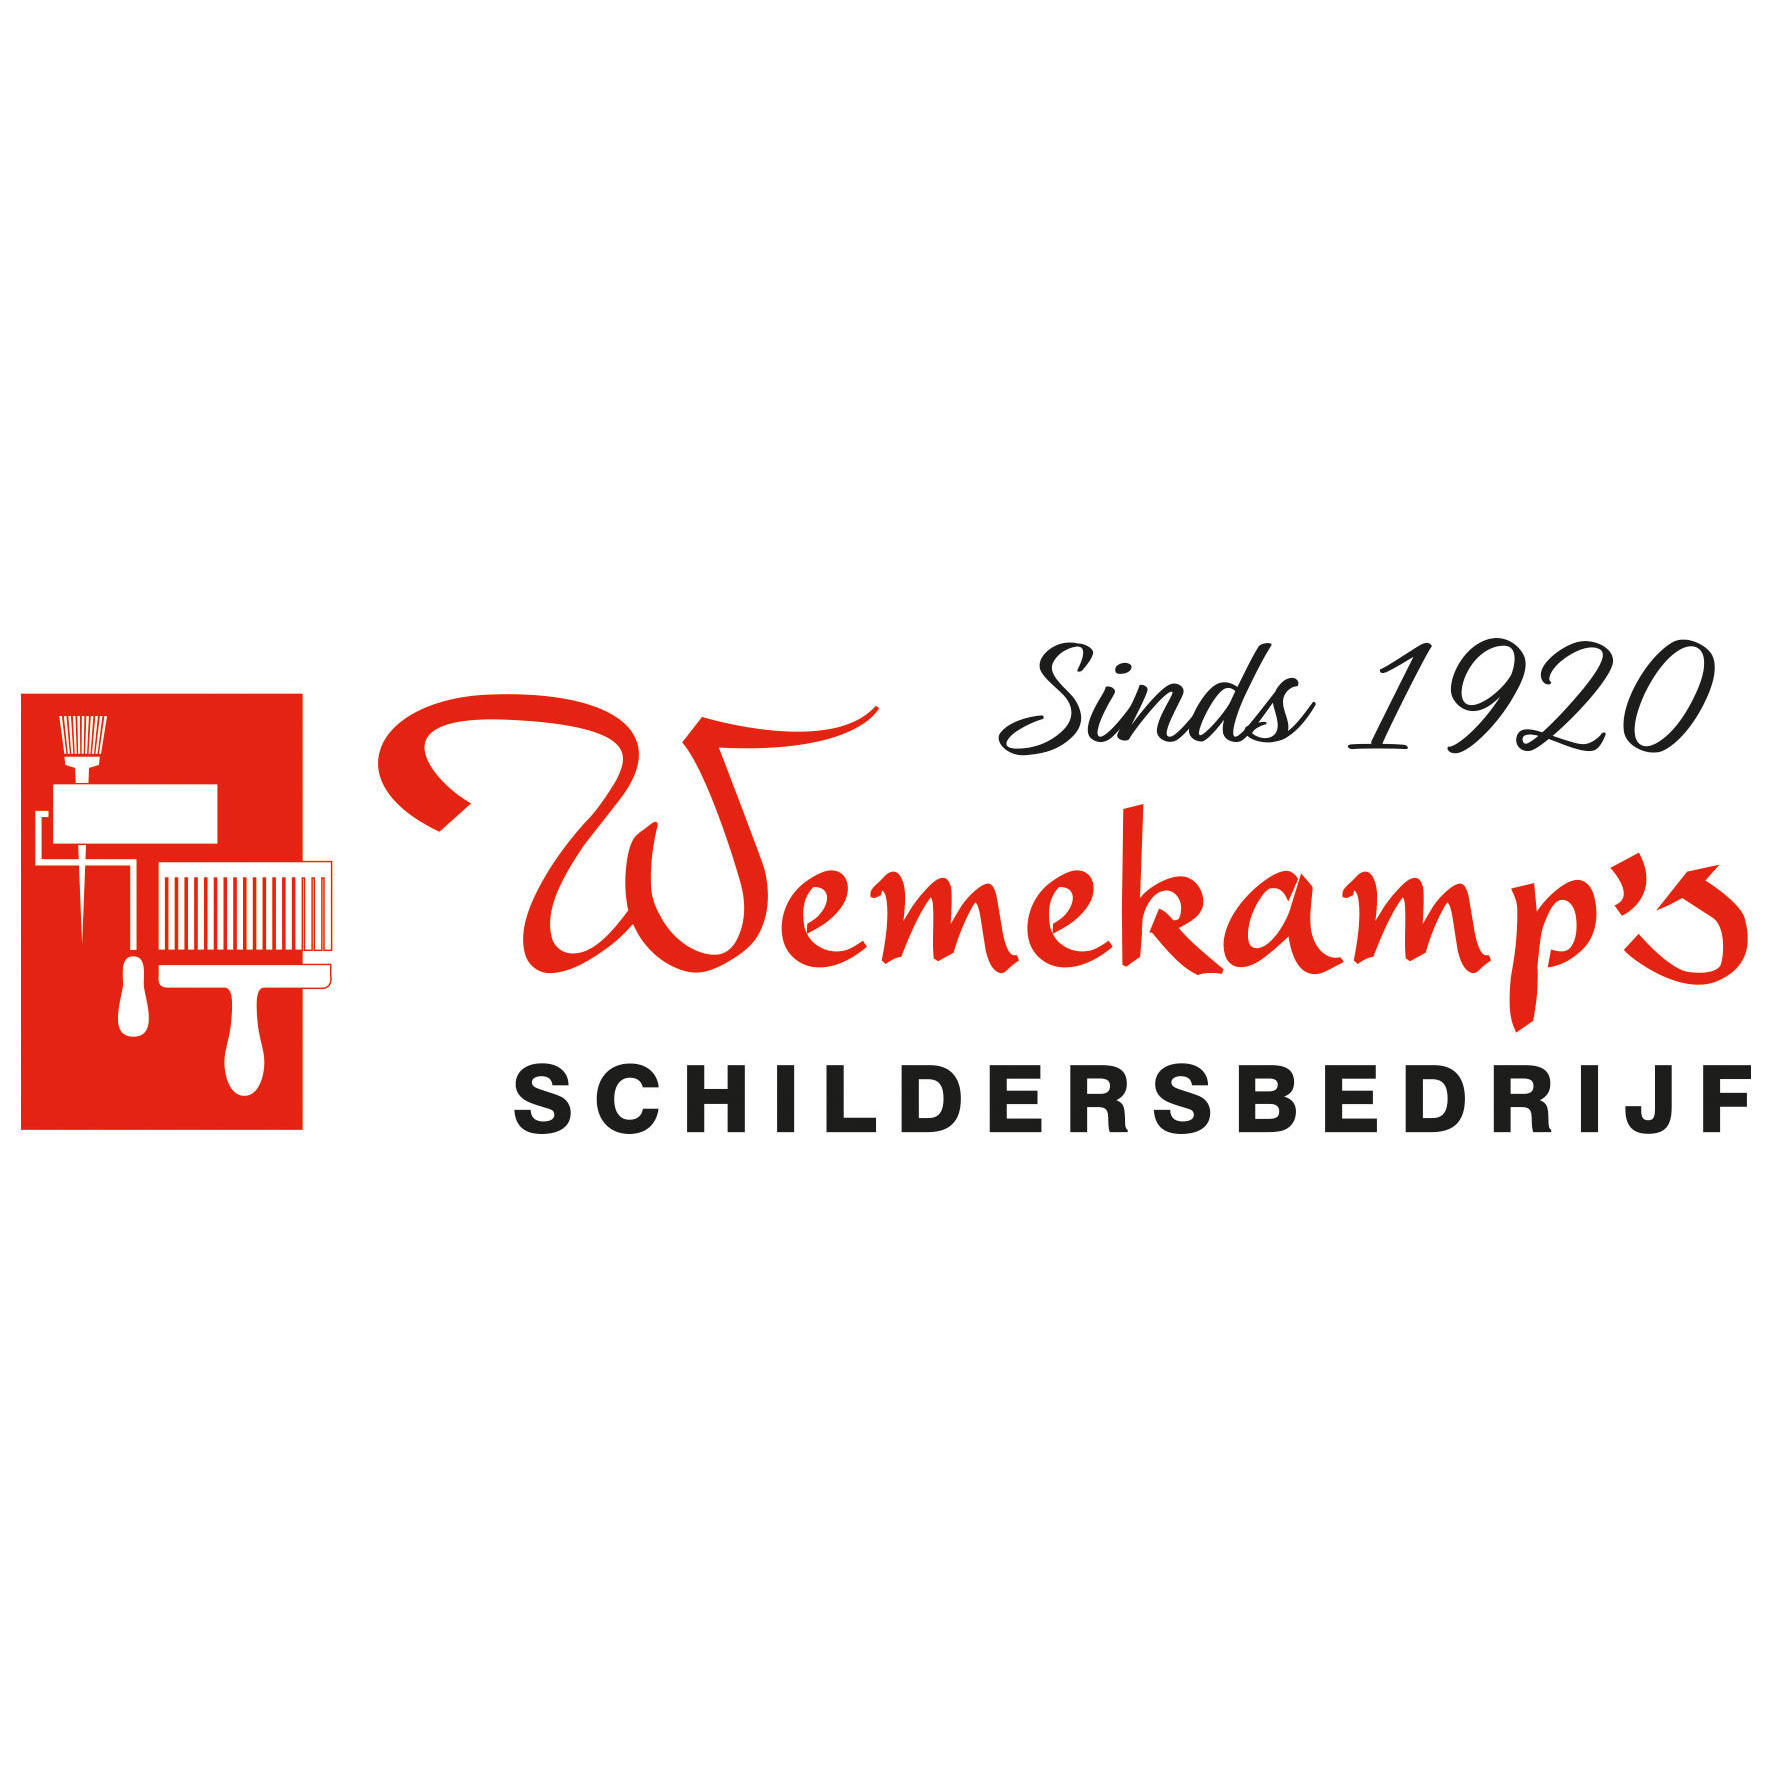 Wemekamp Schildersbedrijf Logo